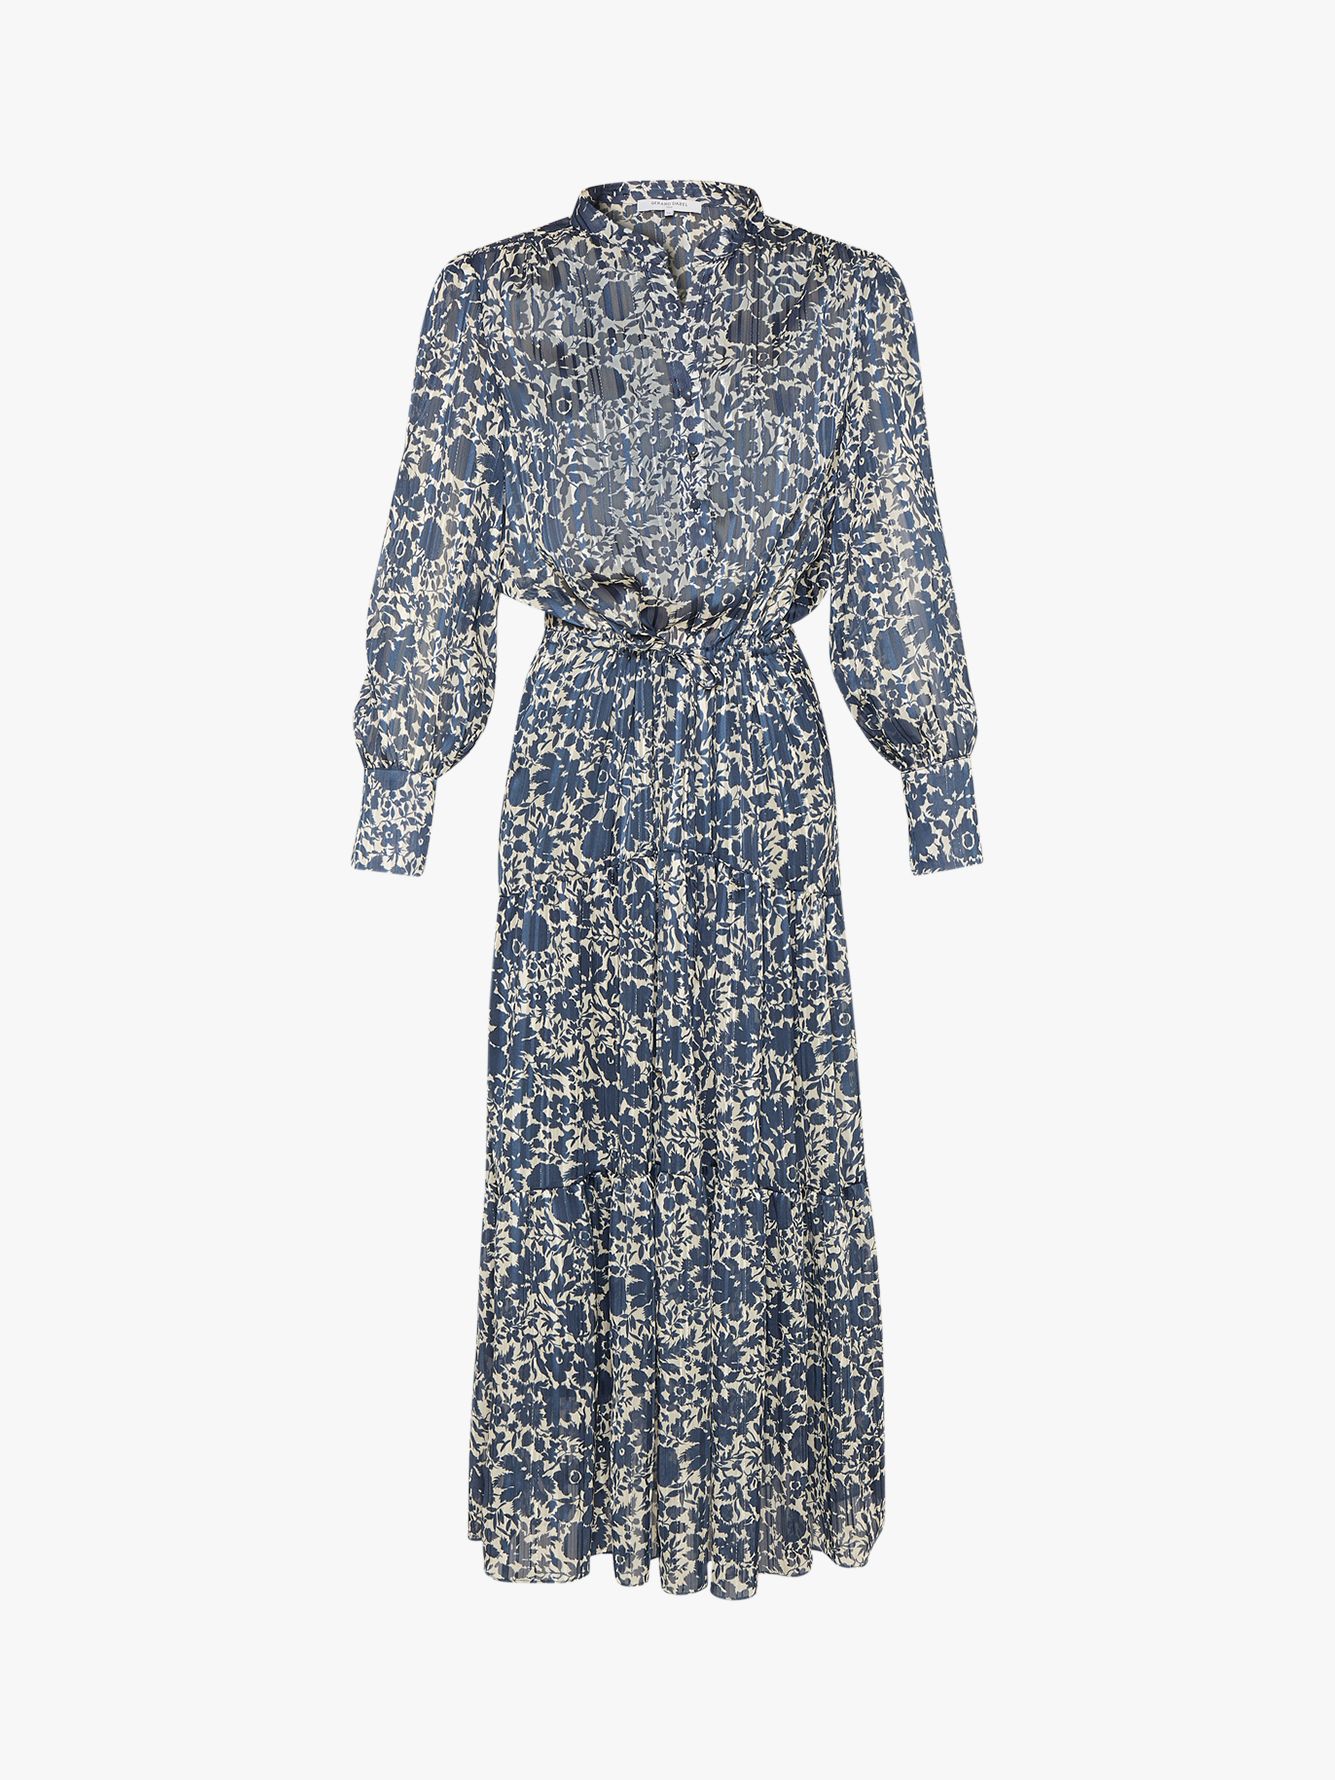 Gerard Darel Selda Floral Print Dress, Blue at John Lewis & Partners